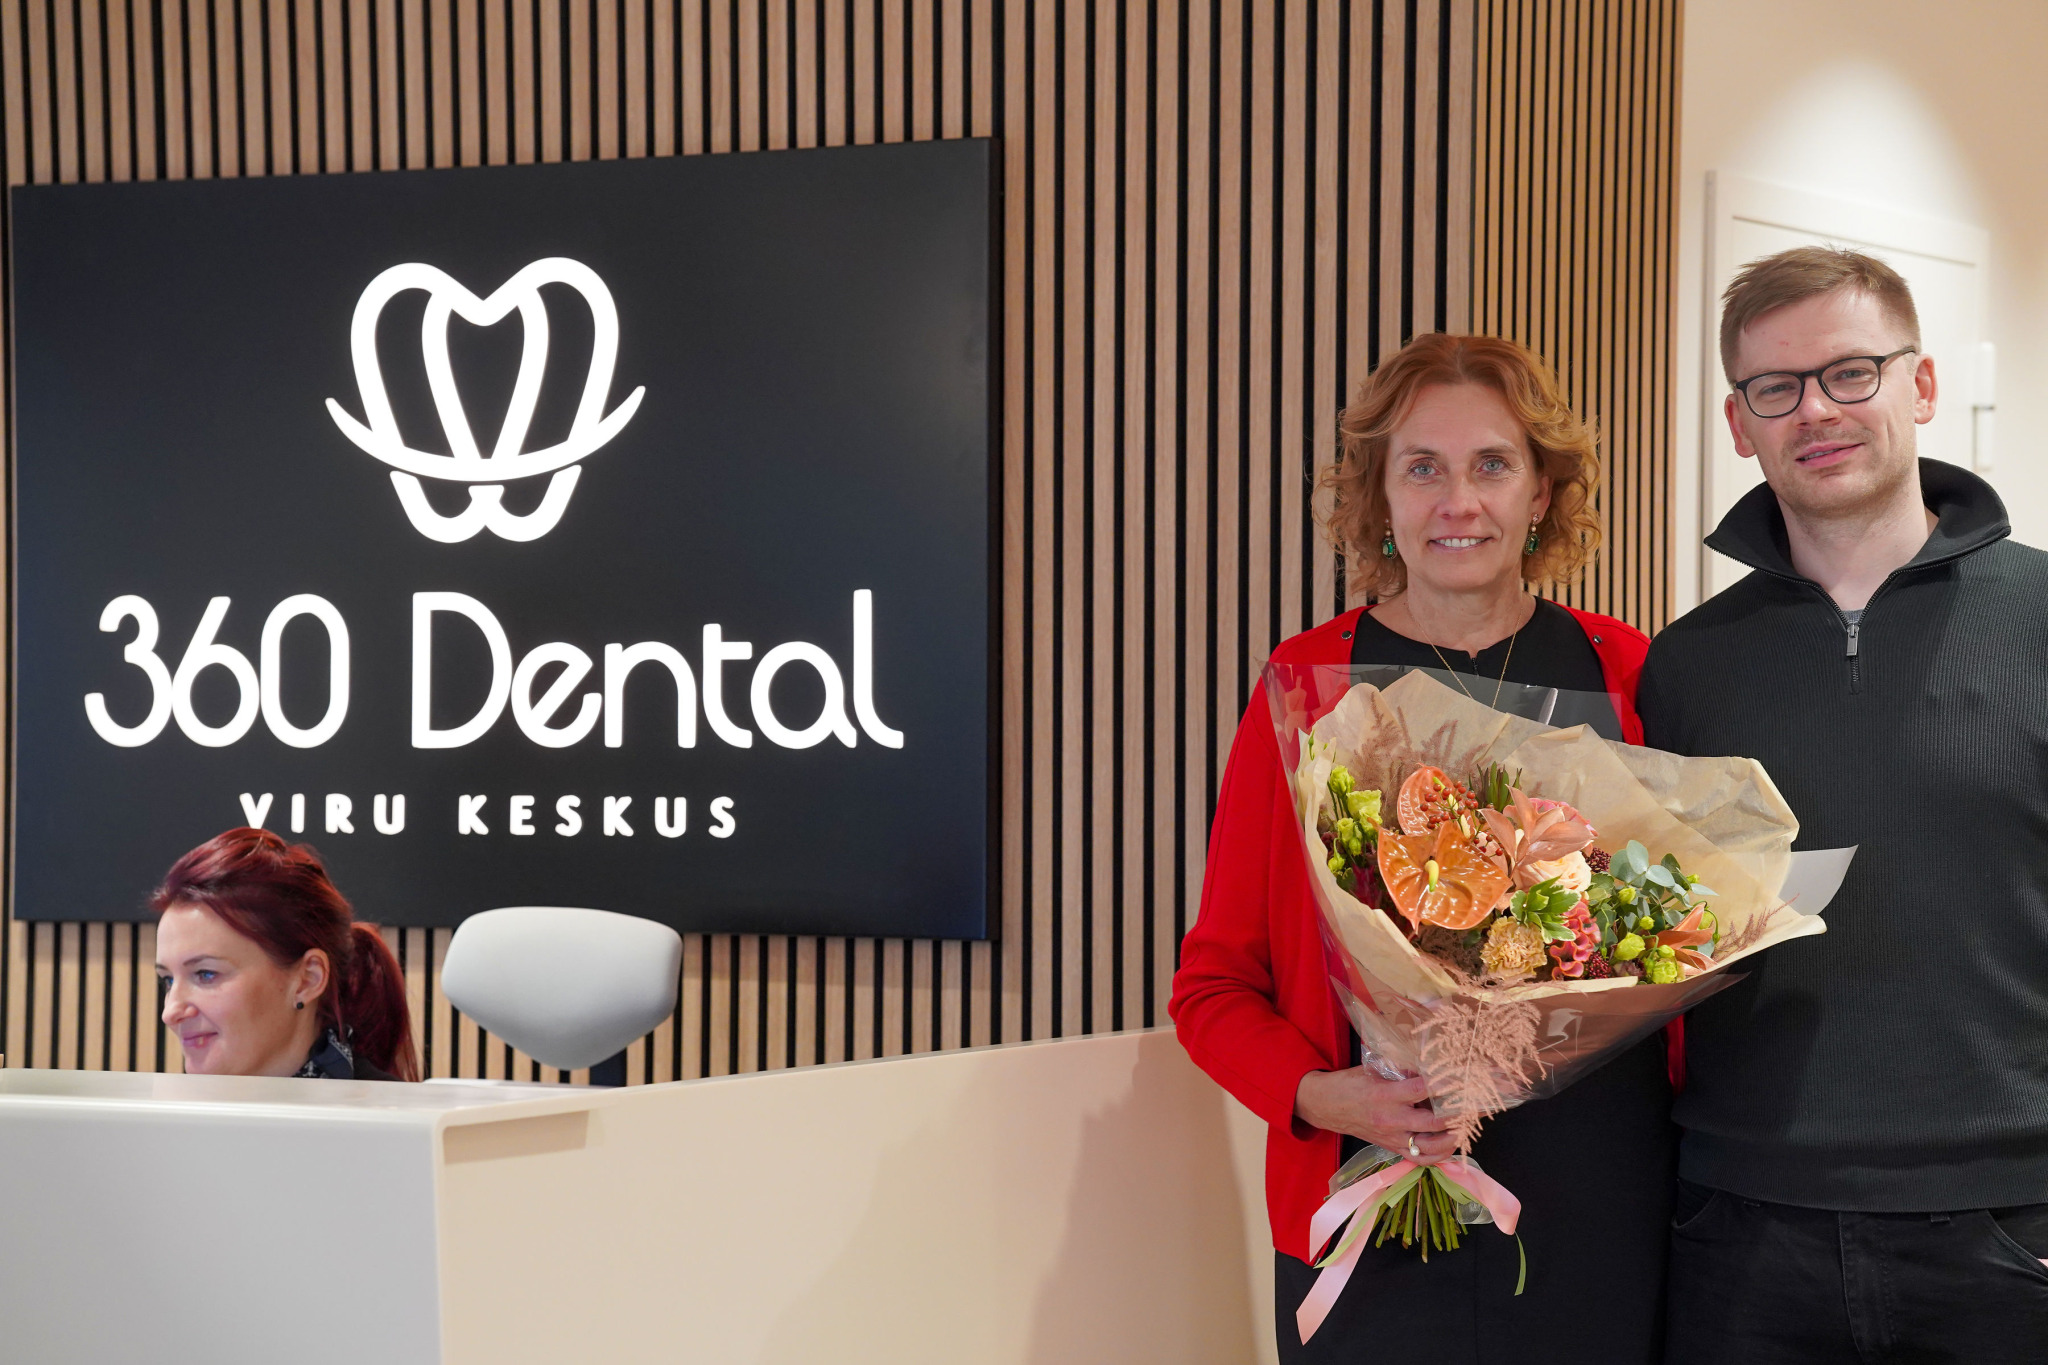 360 Dental avamine (Foto GoodNews, Evelin Kruus) (013) – Marju Prosin, Mart Luide ja Maie Matšenas